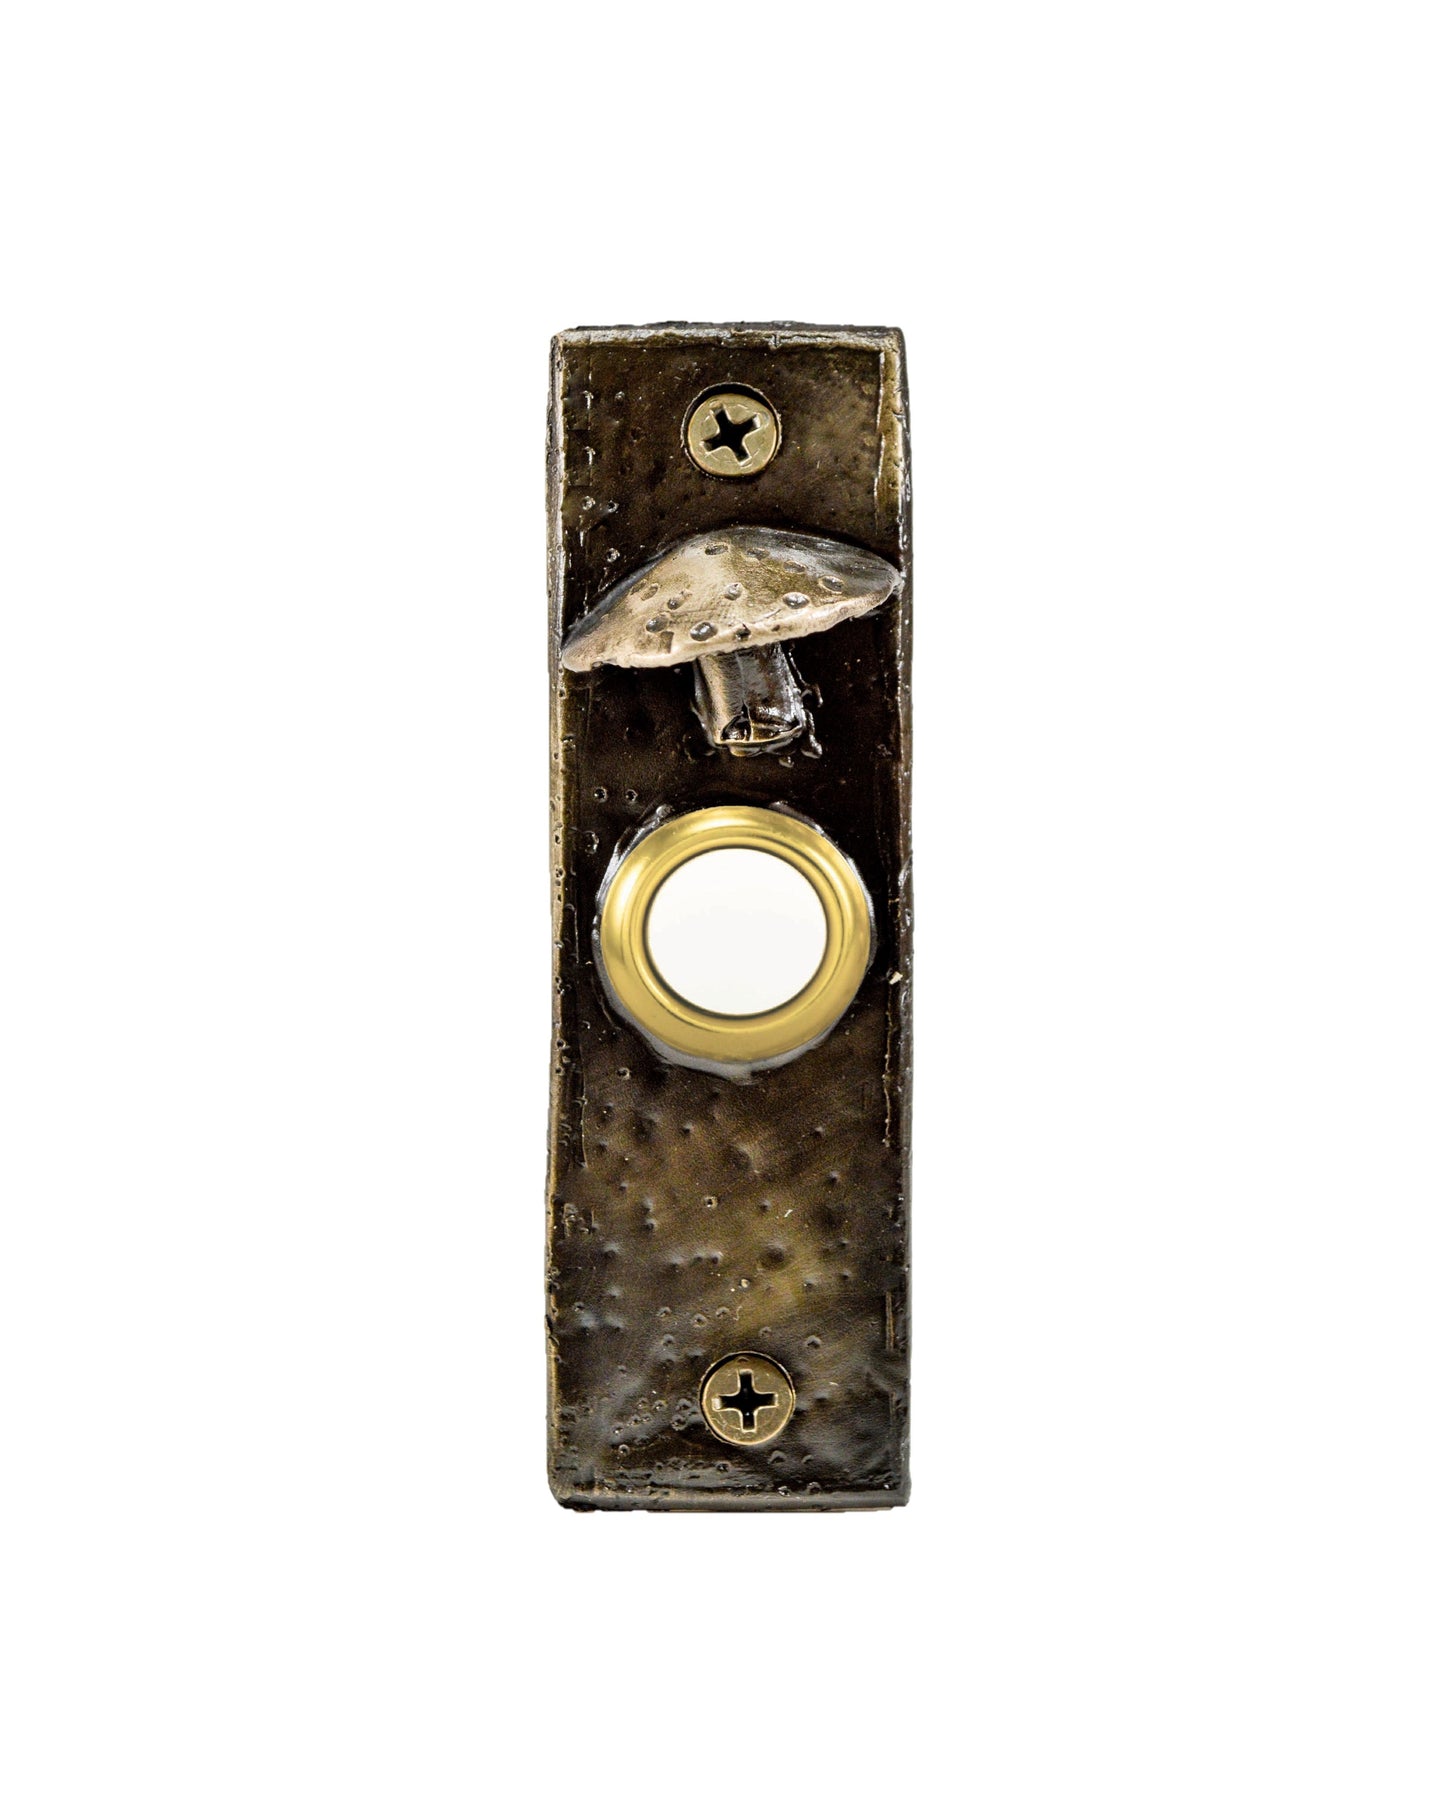 Slim rustic bronze toadstool mushroom doorbell